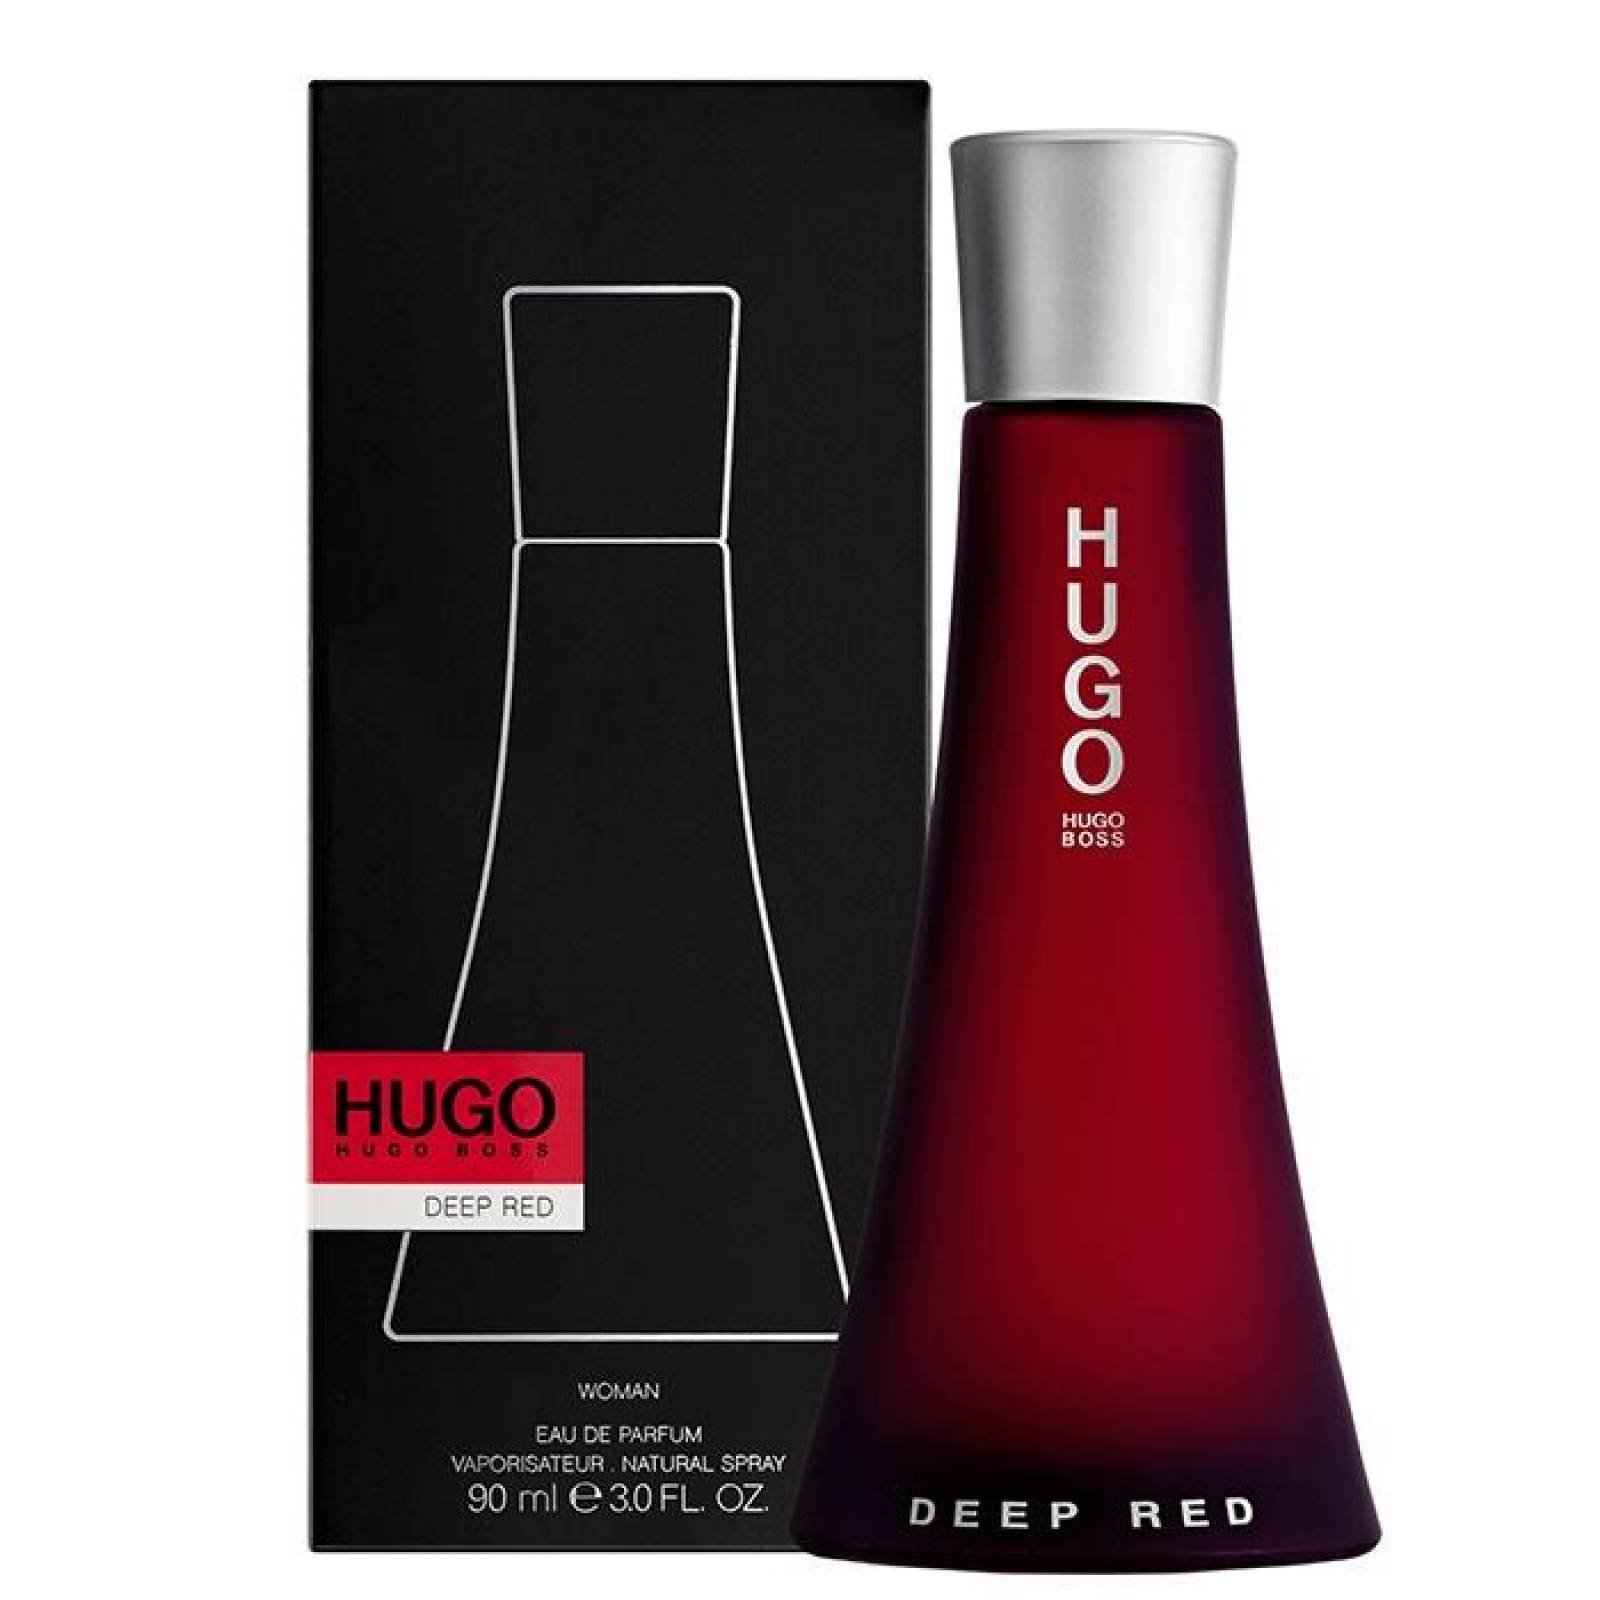 hugo boss red precio liverpool